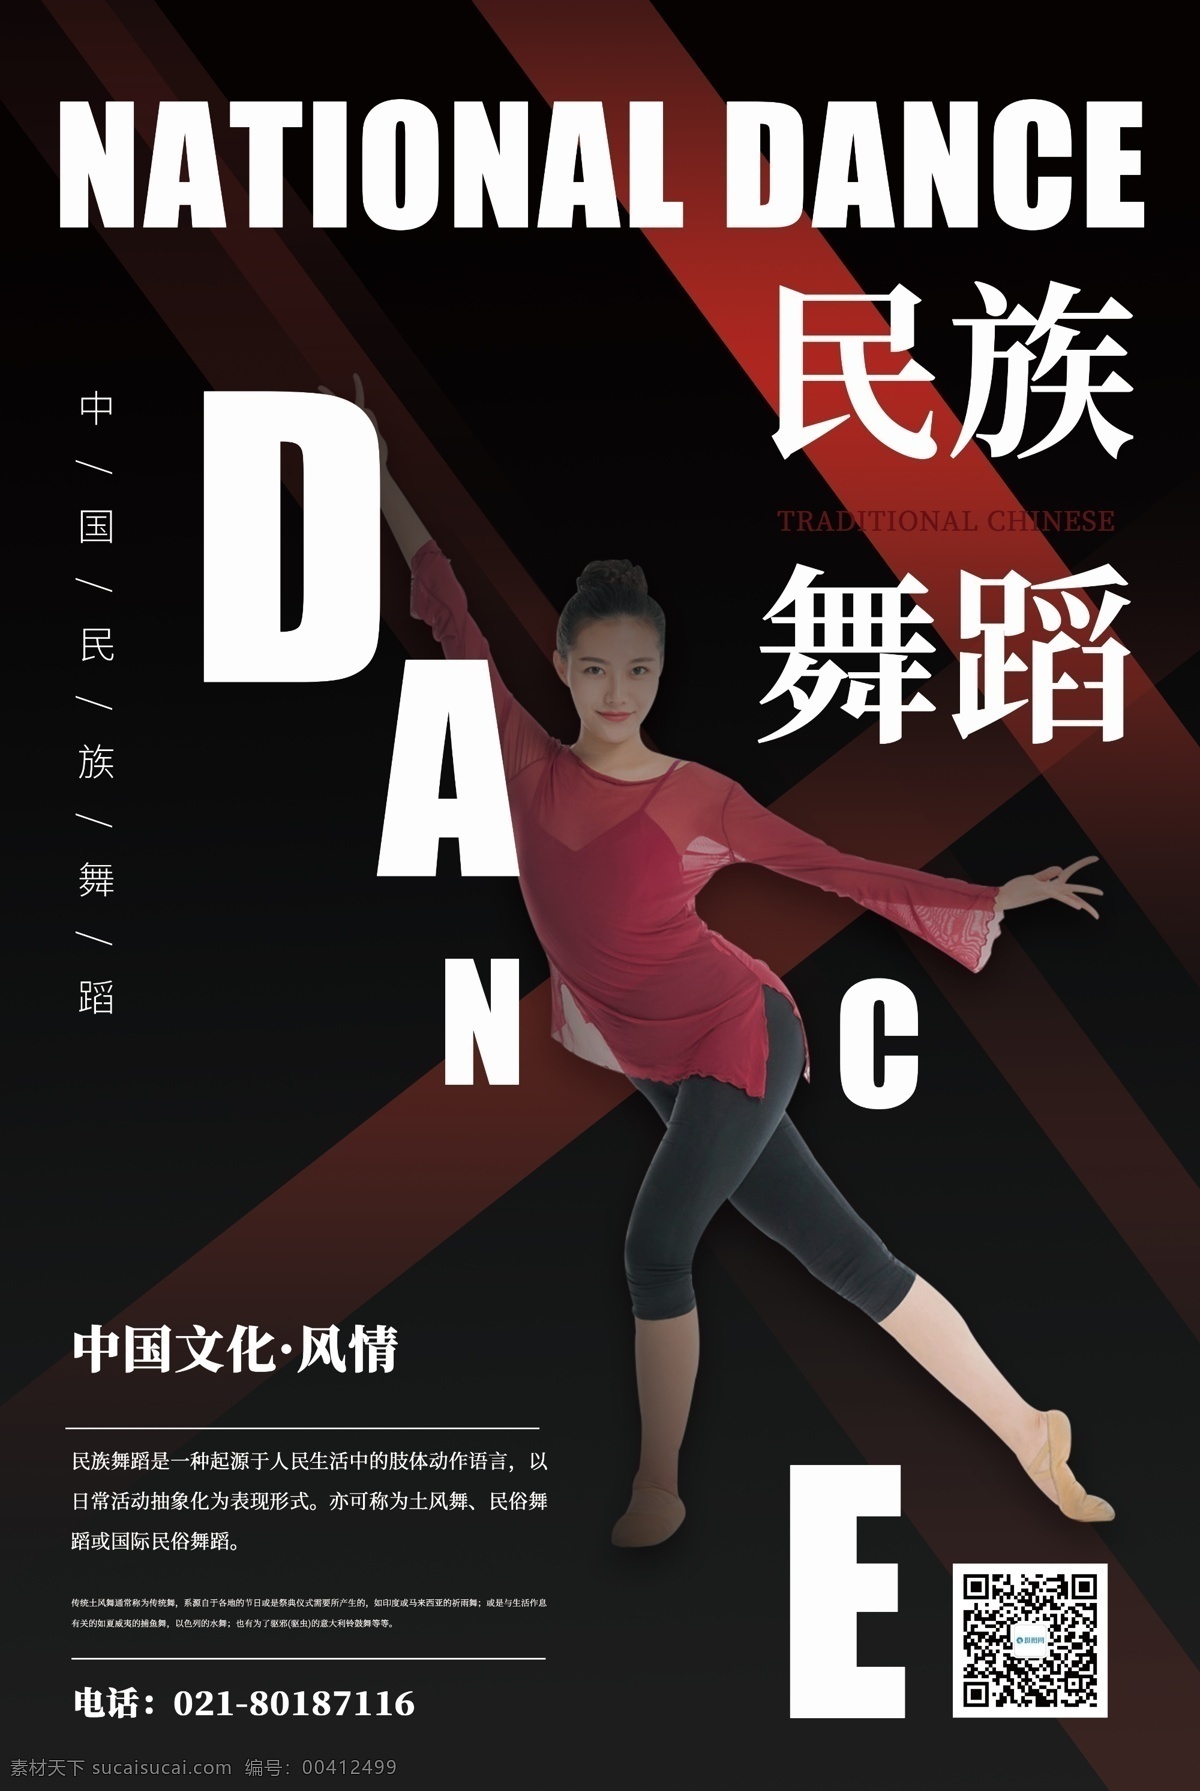 民族 舞蹈 宣传海报 民族舞蹈 民族舞 少数民族 舞蹈培训 舞蹈演出 舞蹈展览 培训 舞蹈美女 舞蹈培训海报